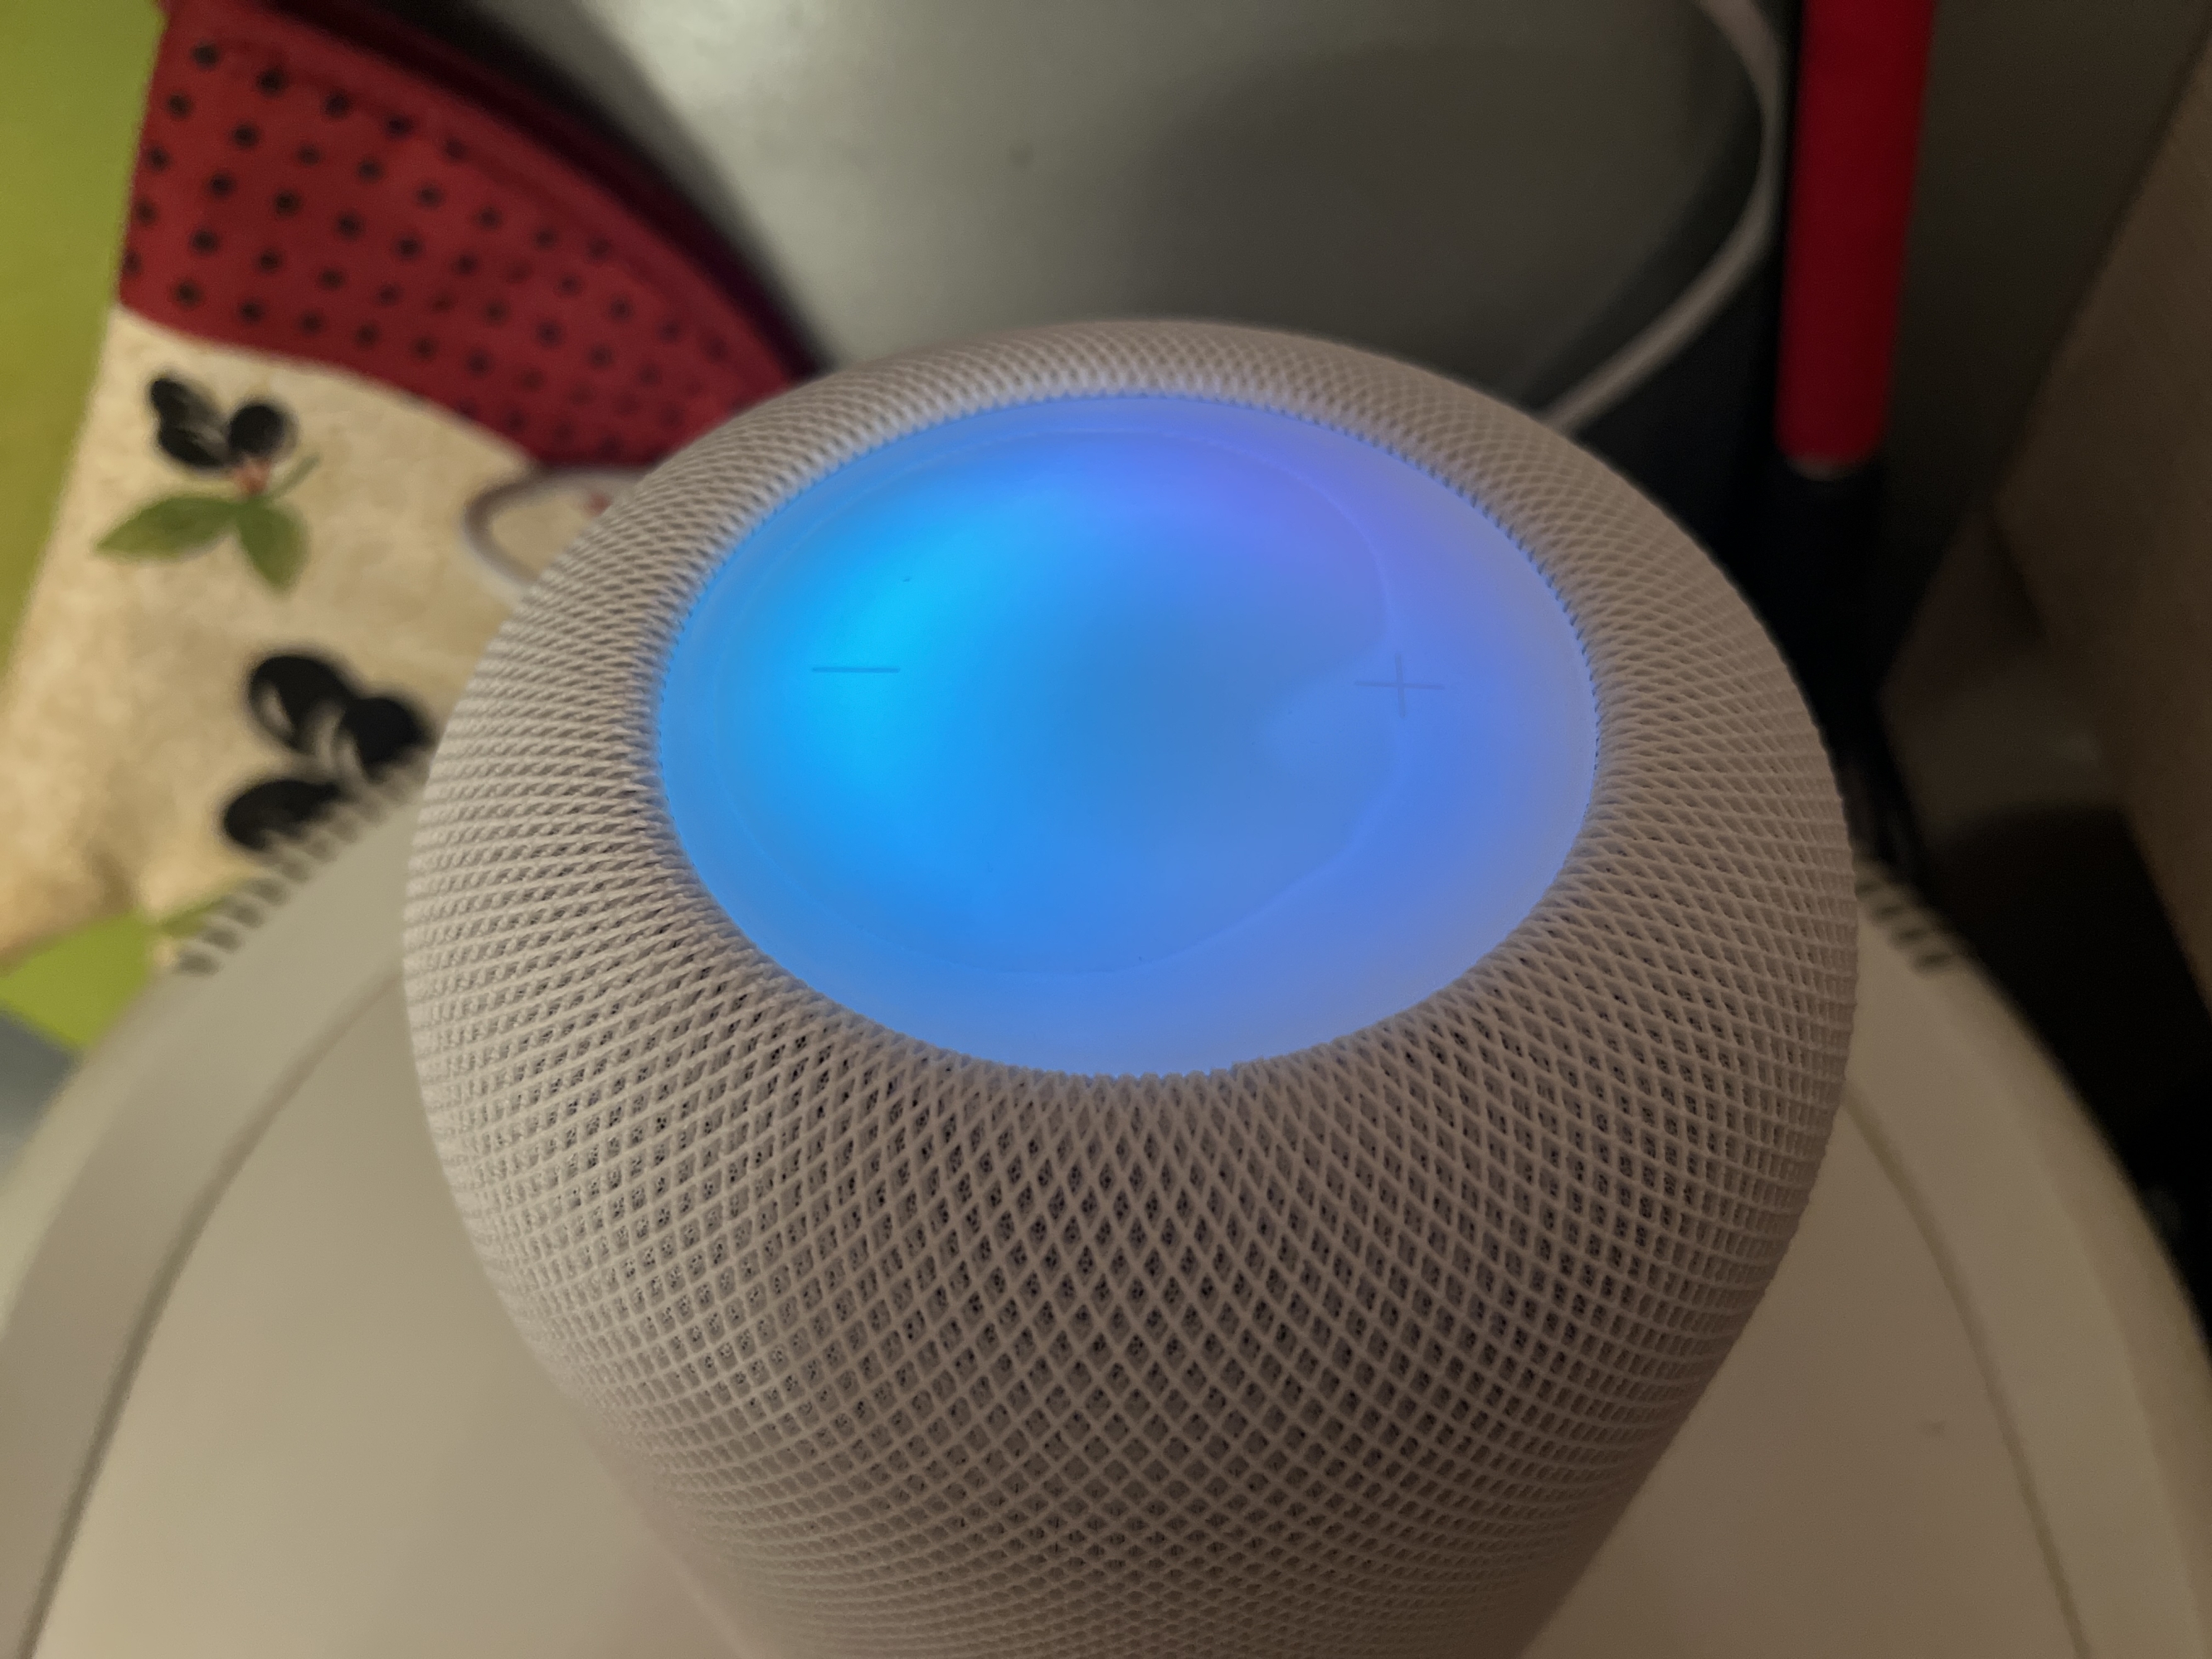 
                                    
                                HomePod Apple di seconda generazione: la prova dello speaker smart e con audio spaziale